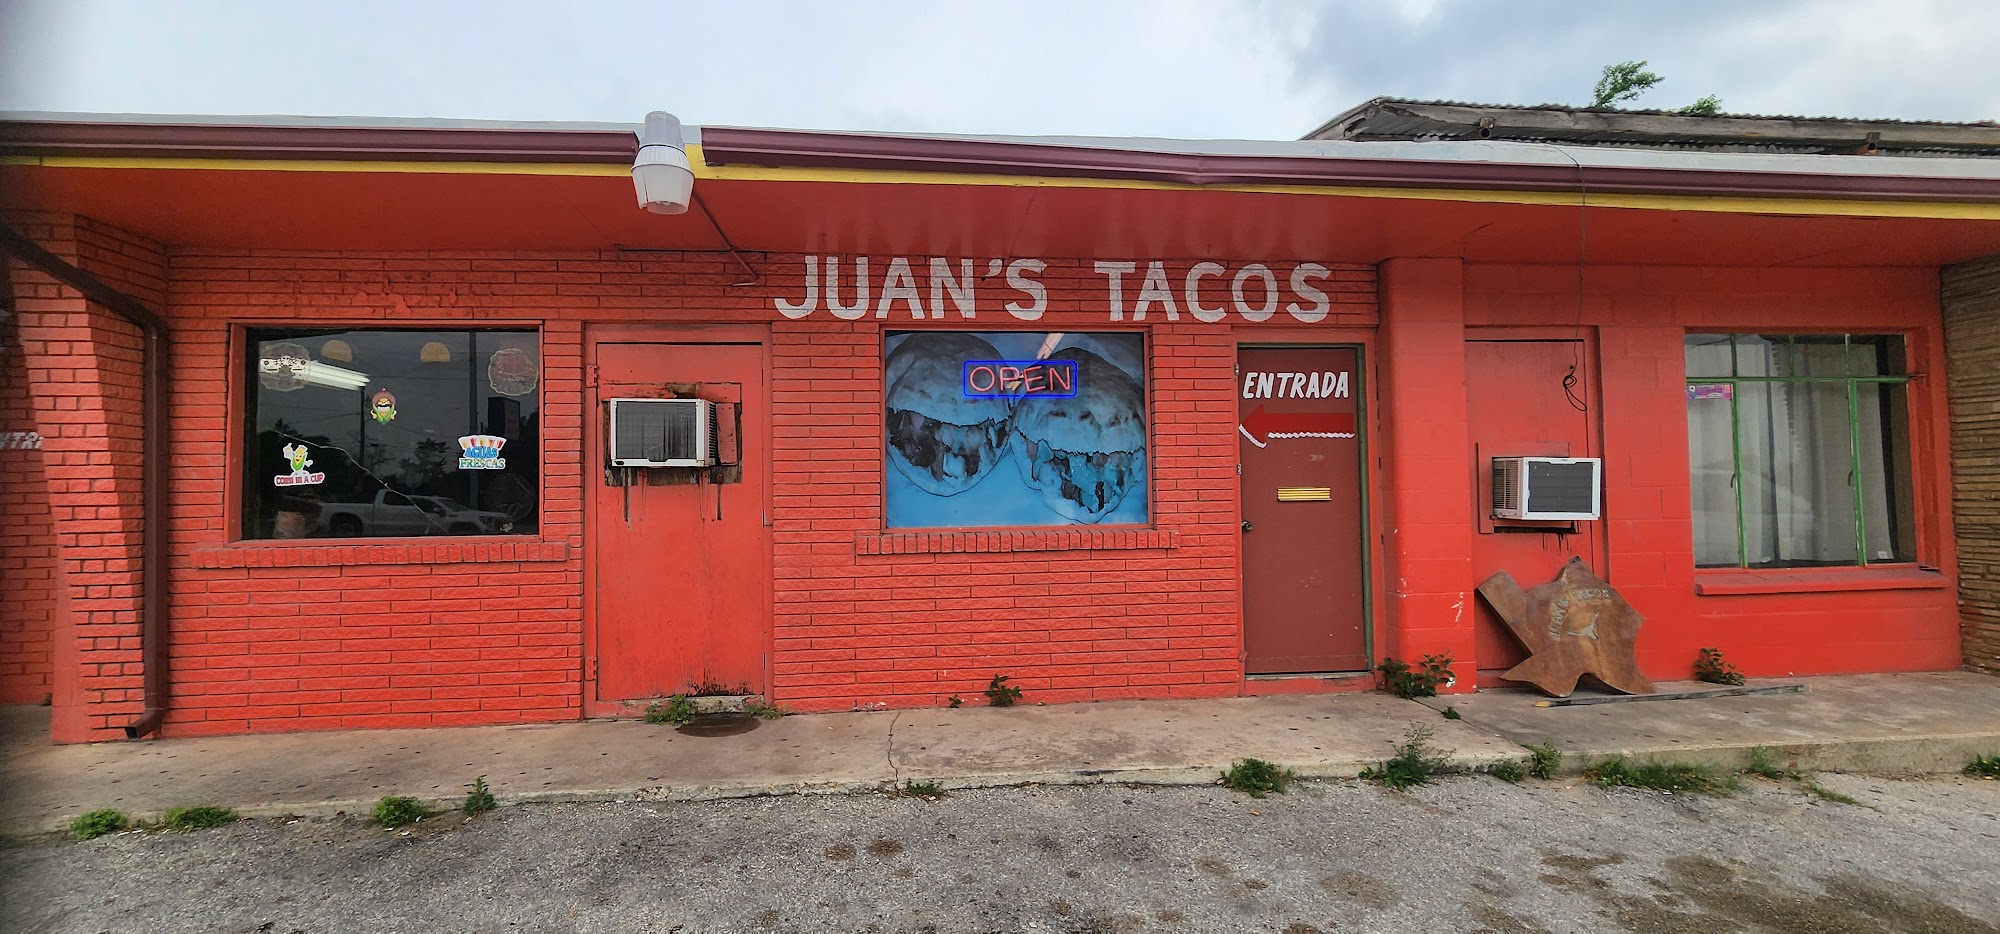 Juan's Tacos